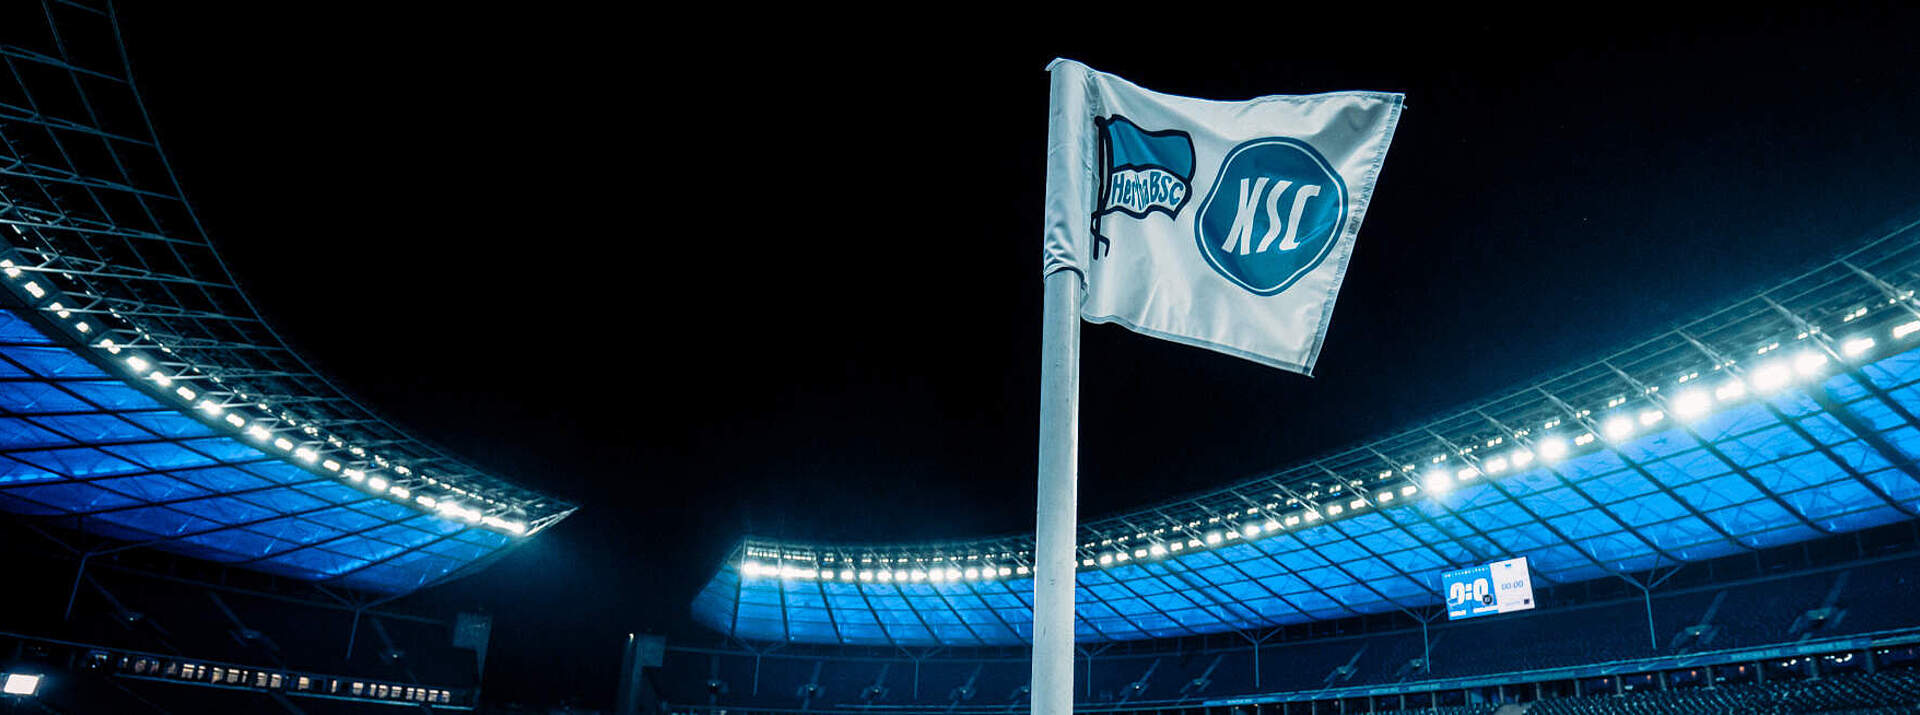 Eckfahne mit dem Hertha- und KSC-Logo